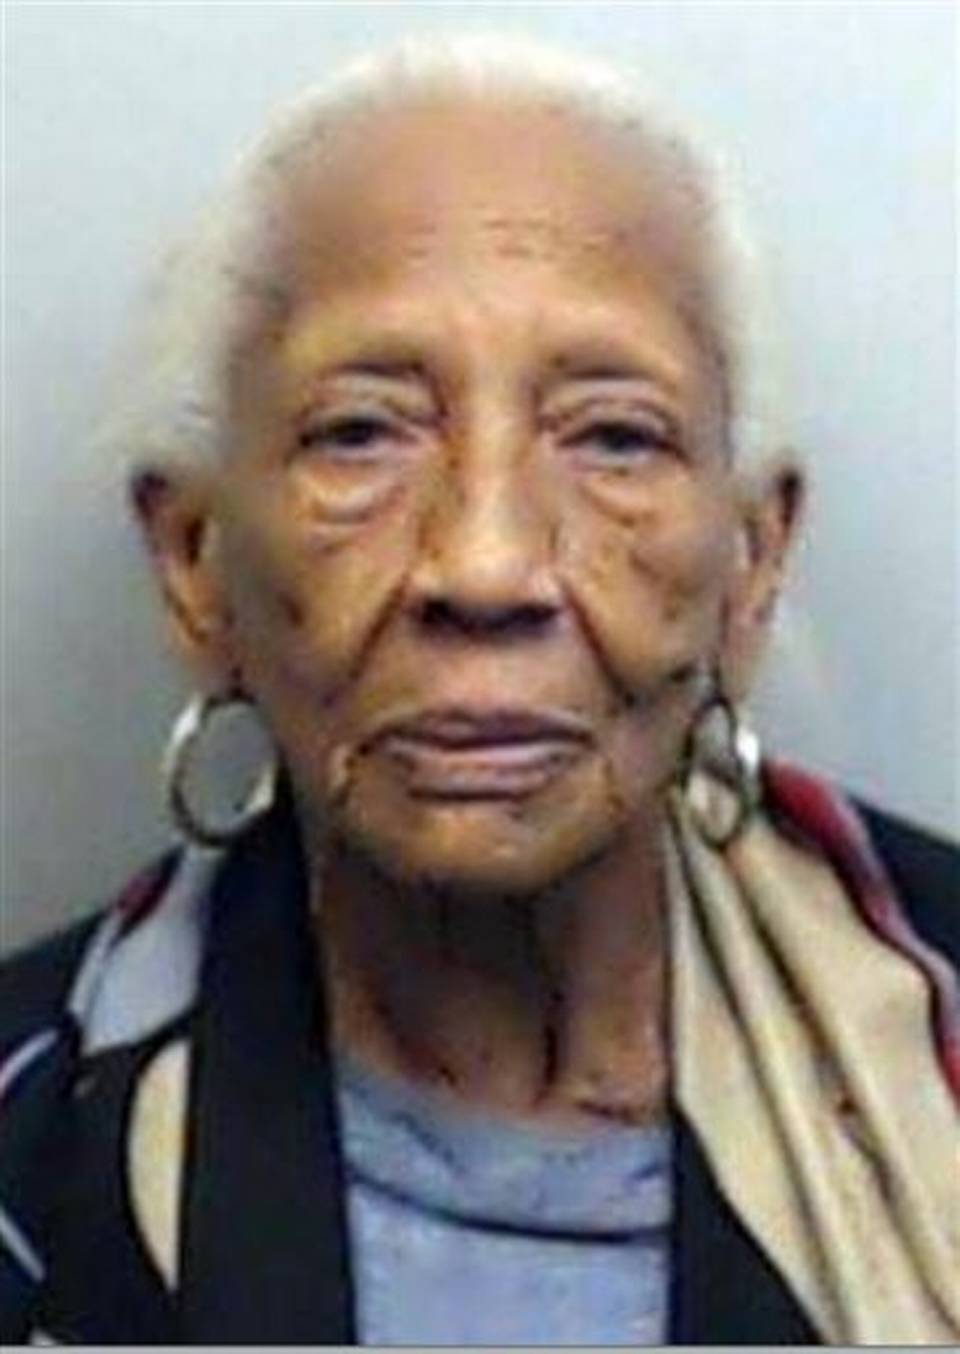 Ladrona de 85 años arrestada en centro comercial de Atlanta